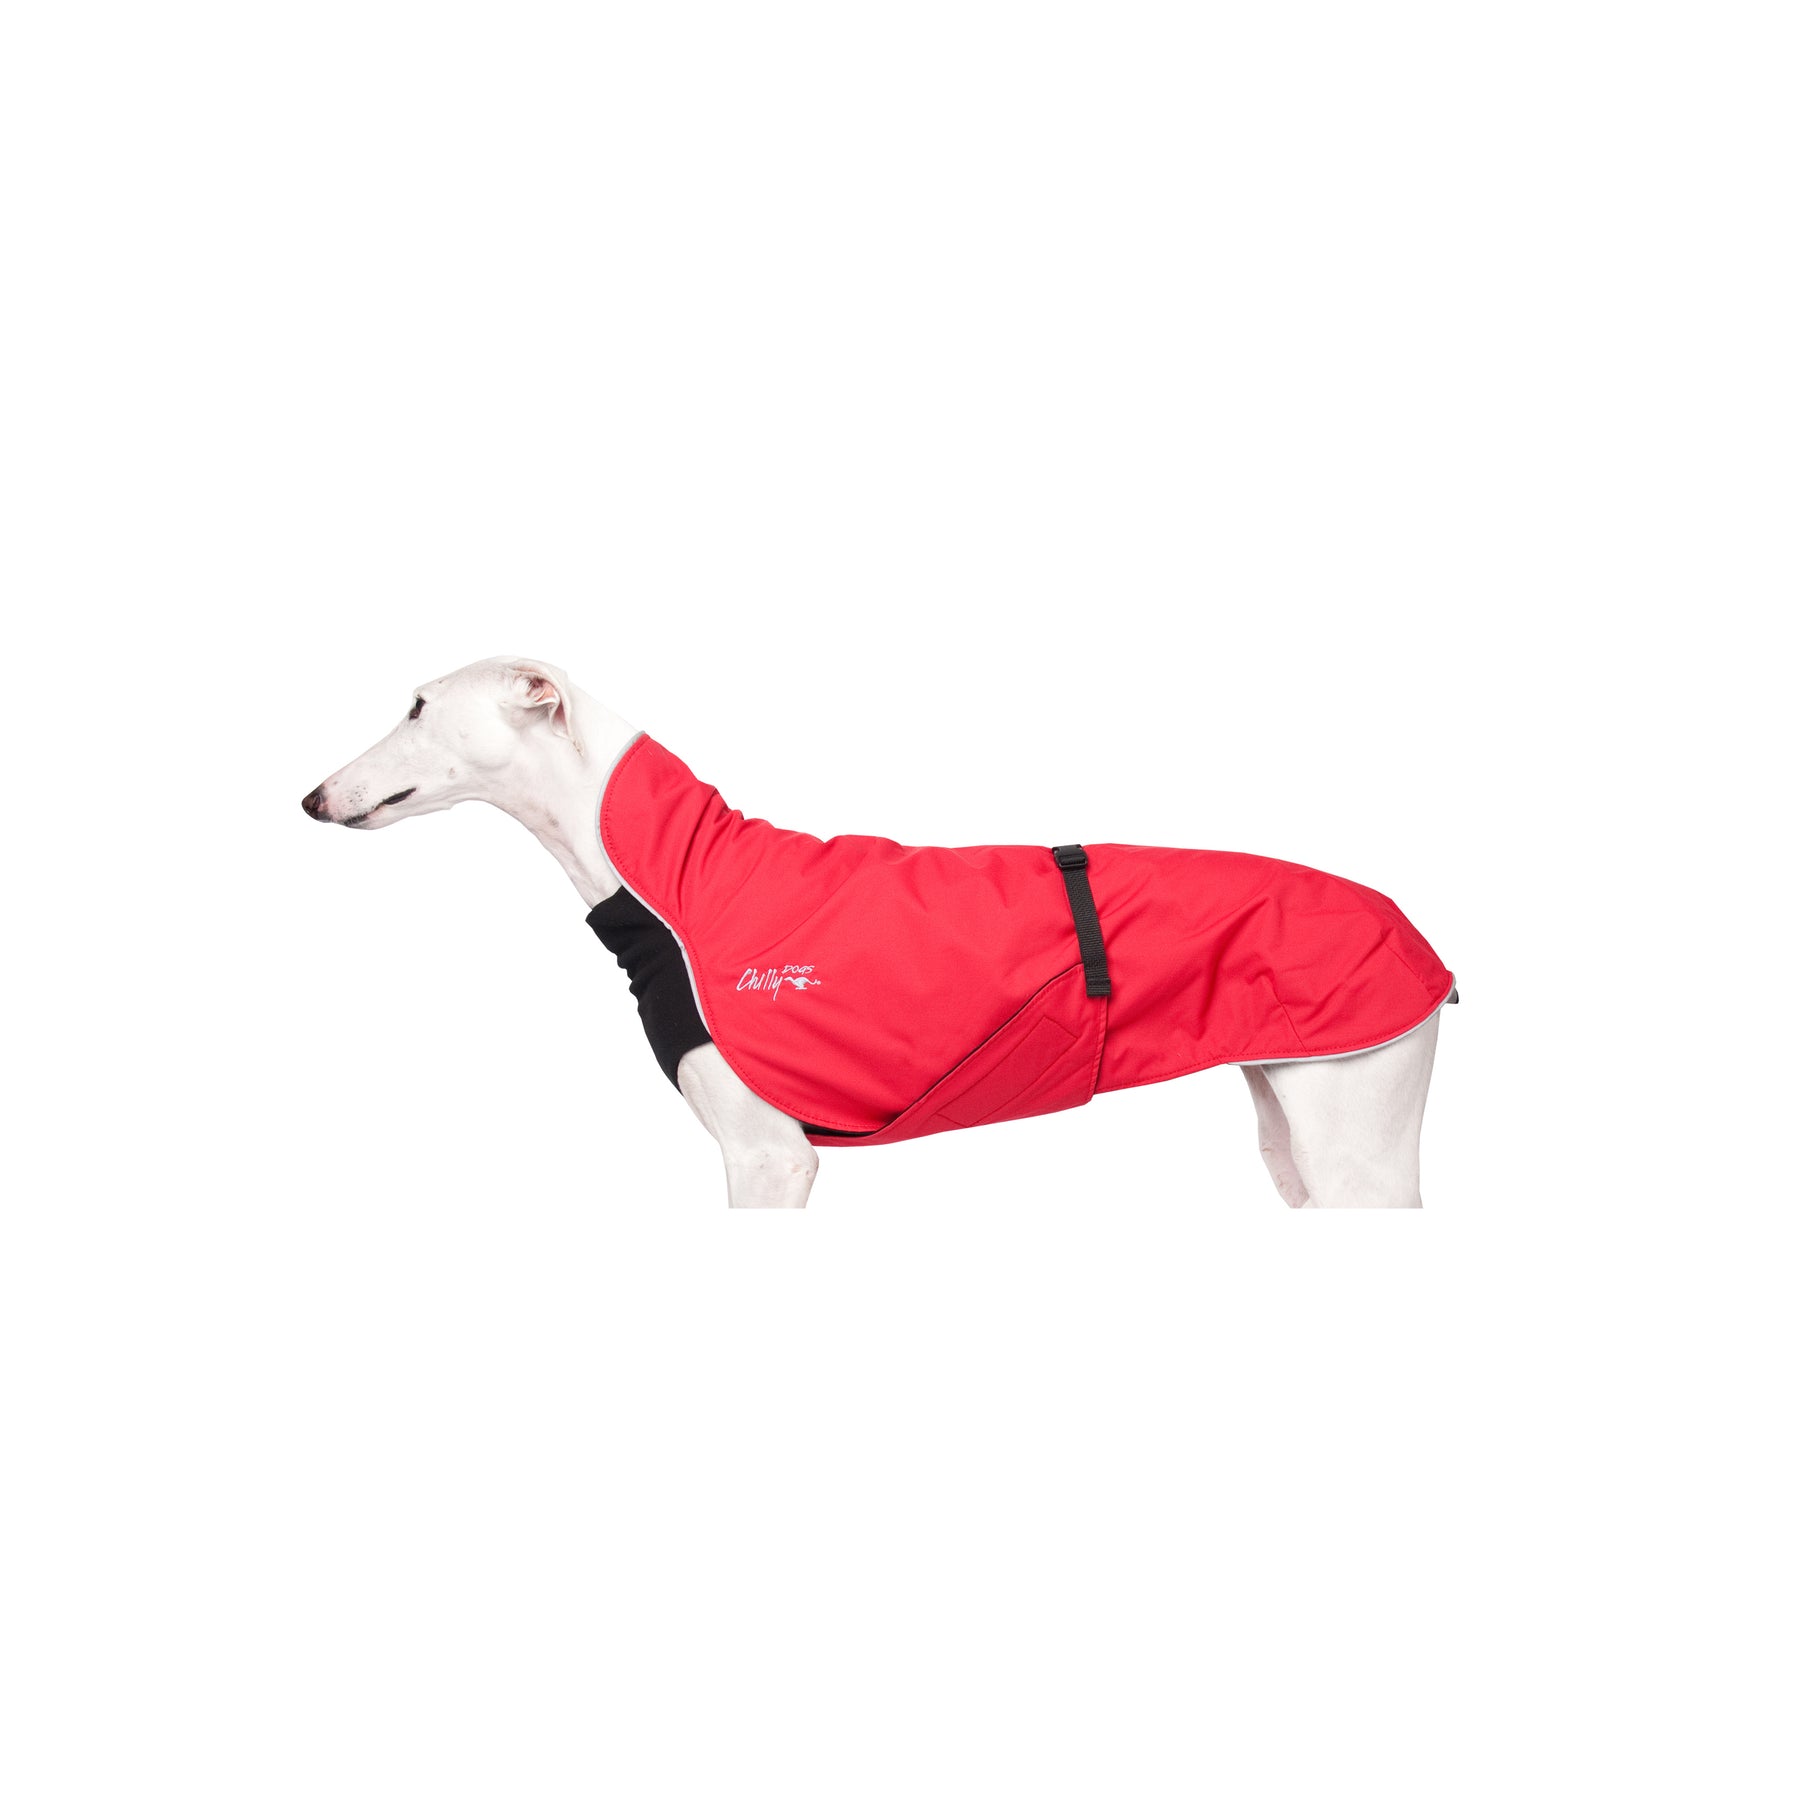 Hundemantel in rot für Windhunde von Chilly Dogs. Geprägt von einem Stilvollen Design, höchster Schutz und Erfahrung und Expertise.